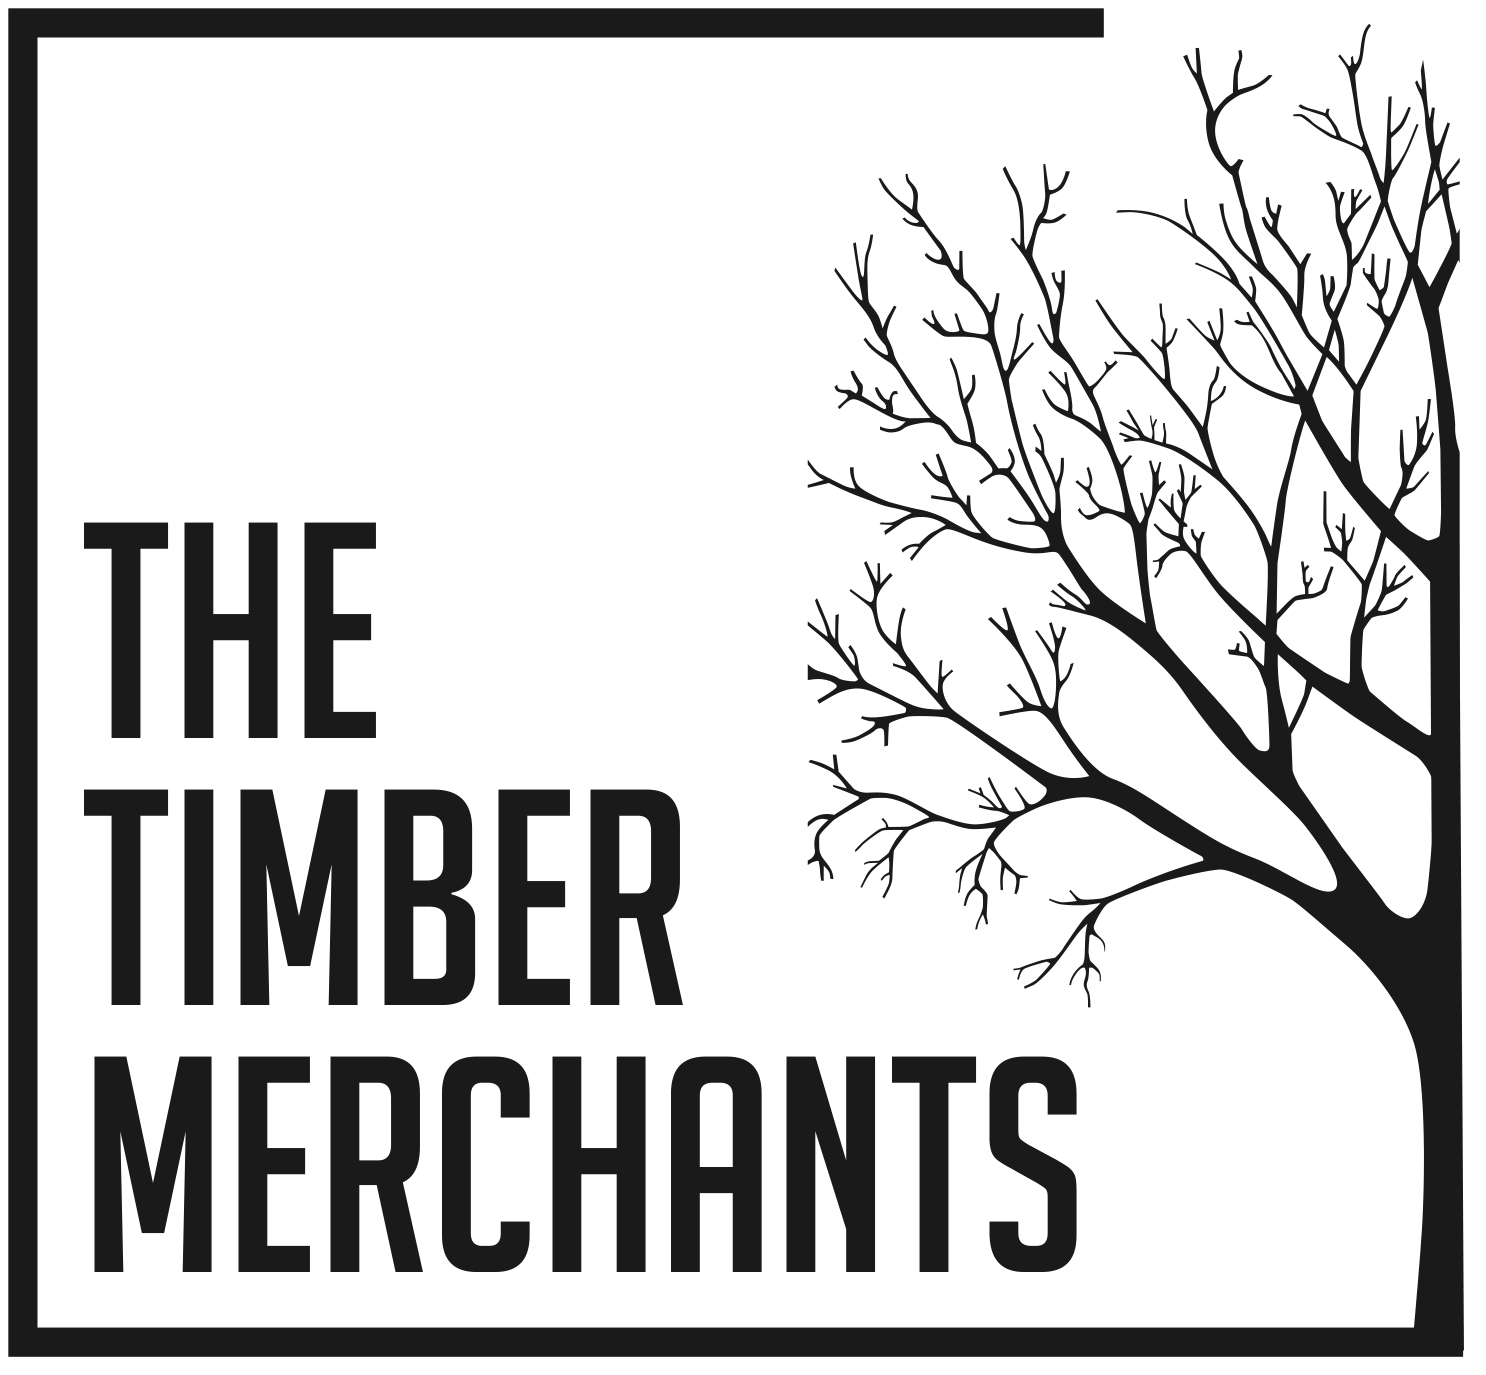 The Timber Merchants